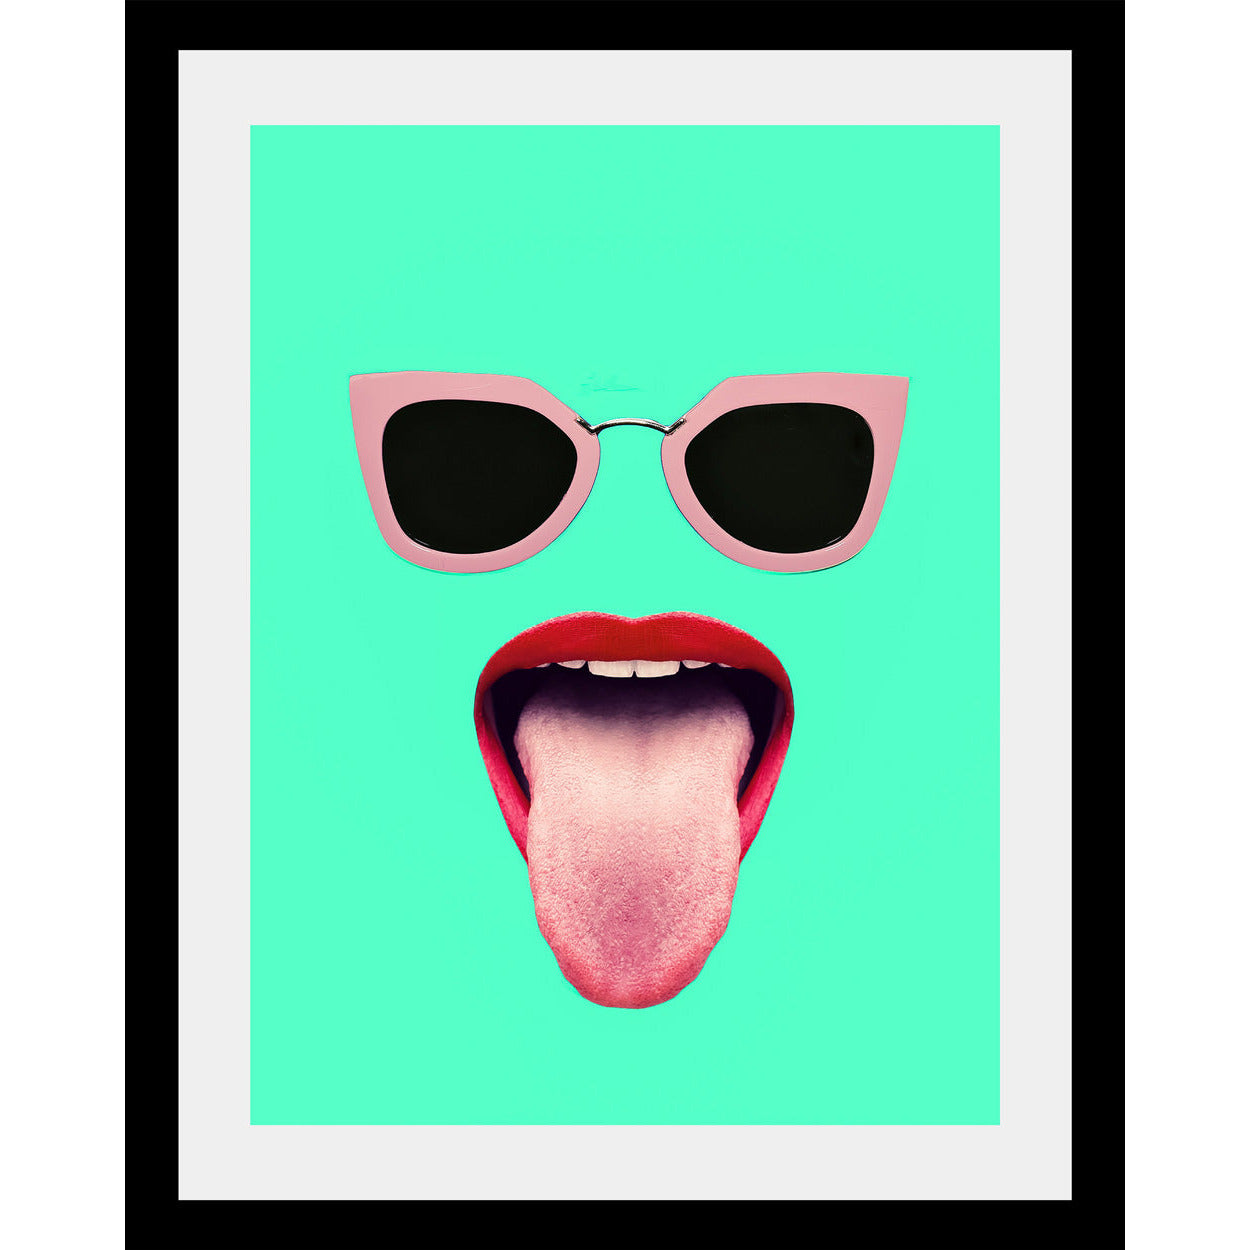 Rahmenbild - Tongue